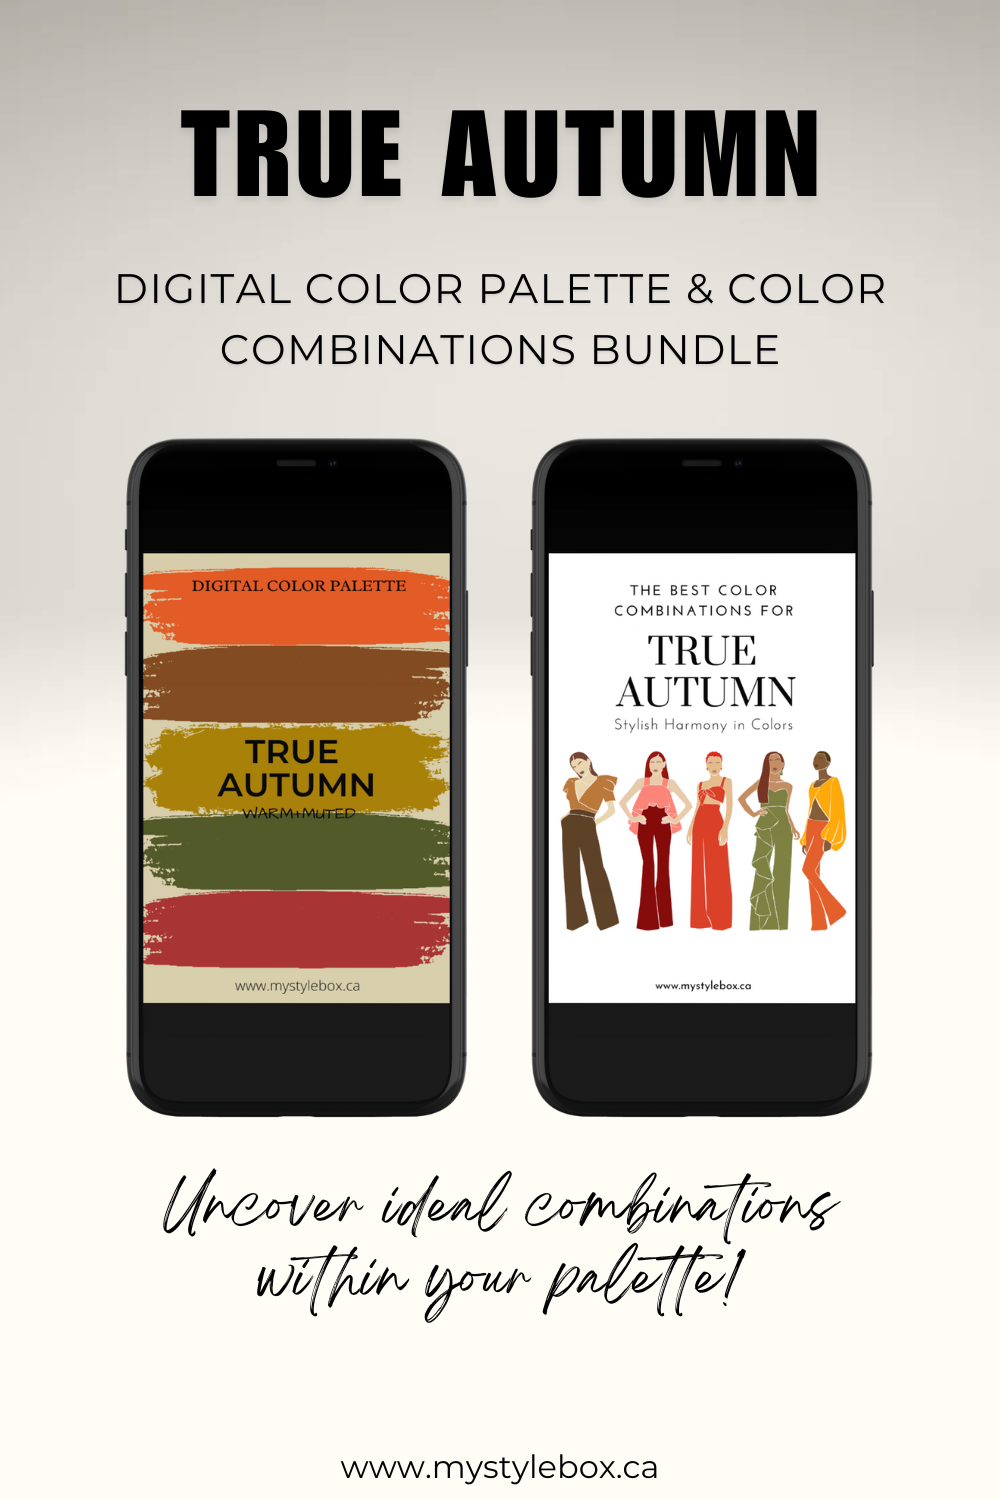 True (Warm) Autumn Digital Color Palette and Color Combinations